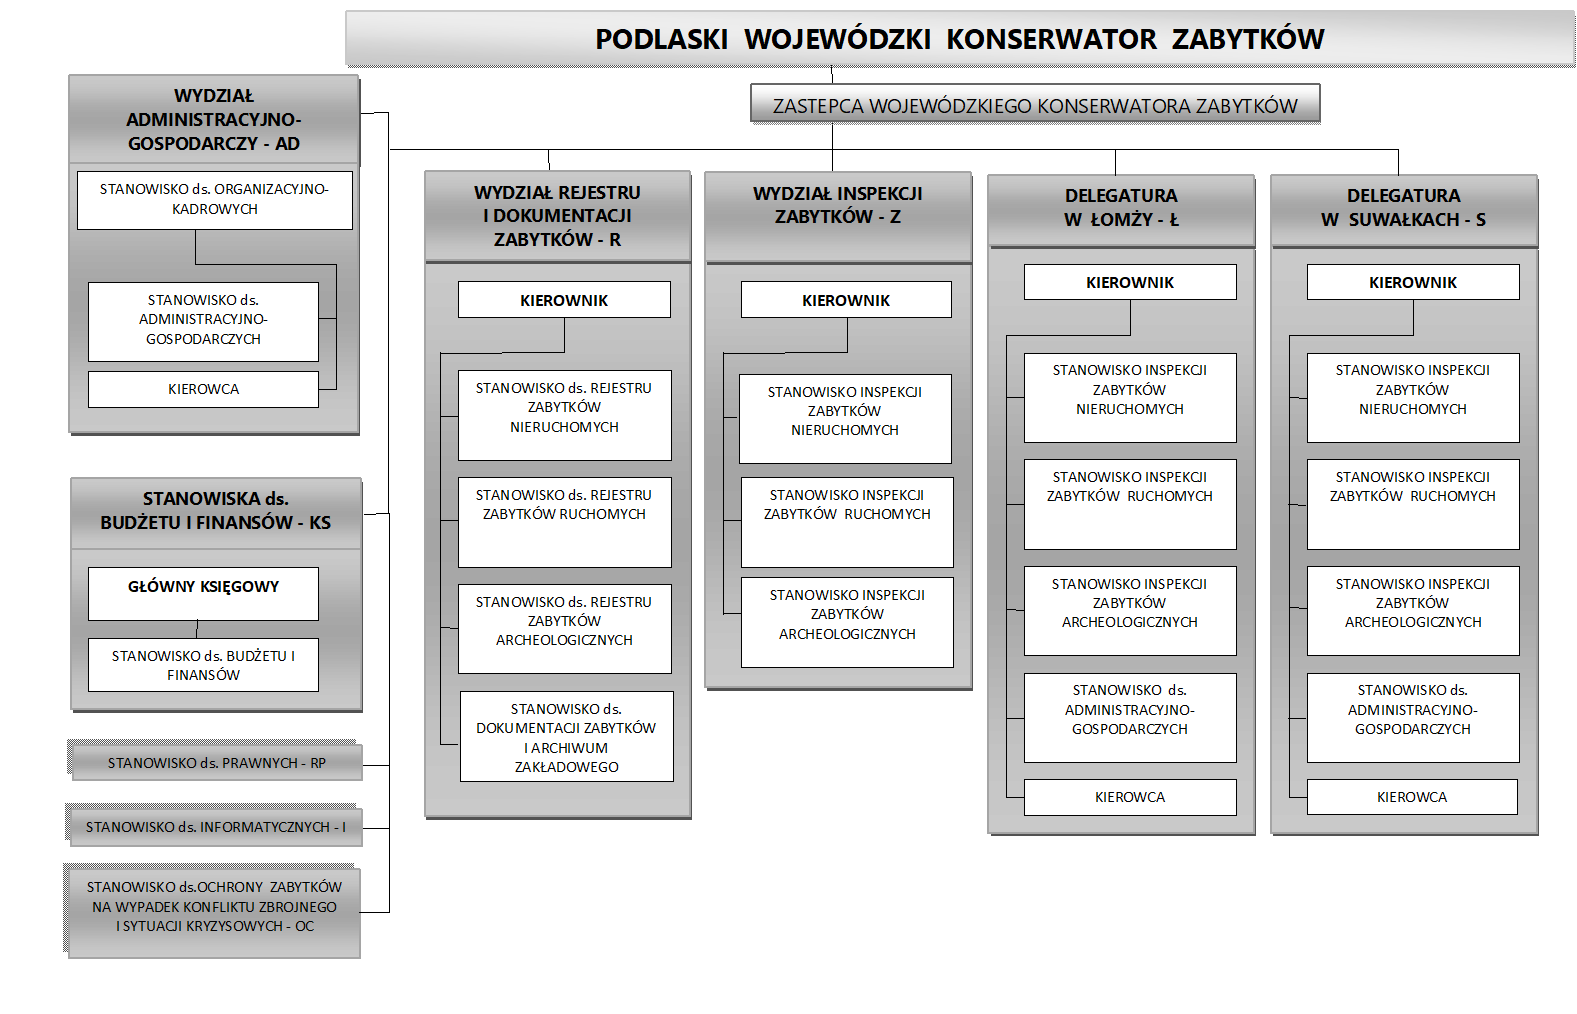 tabela prezentuje strukturę Wojewódzkiego Urzędu Ochrony Zabytków